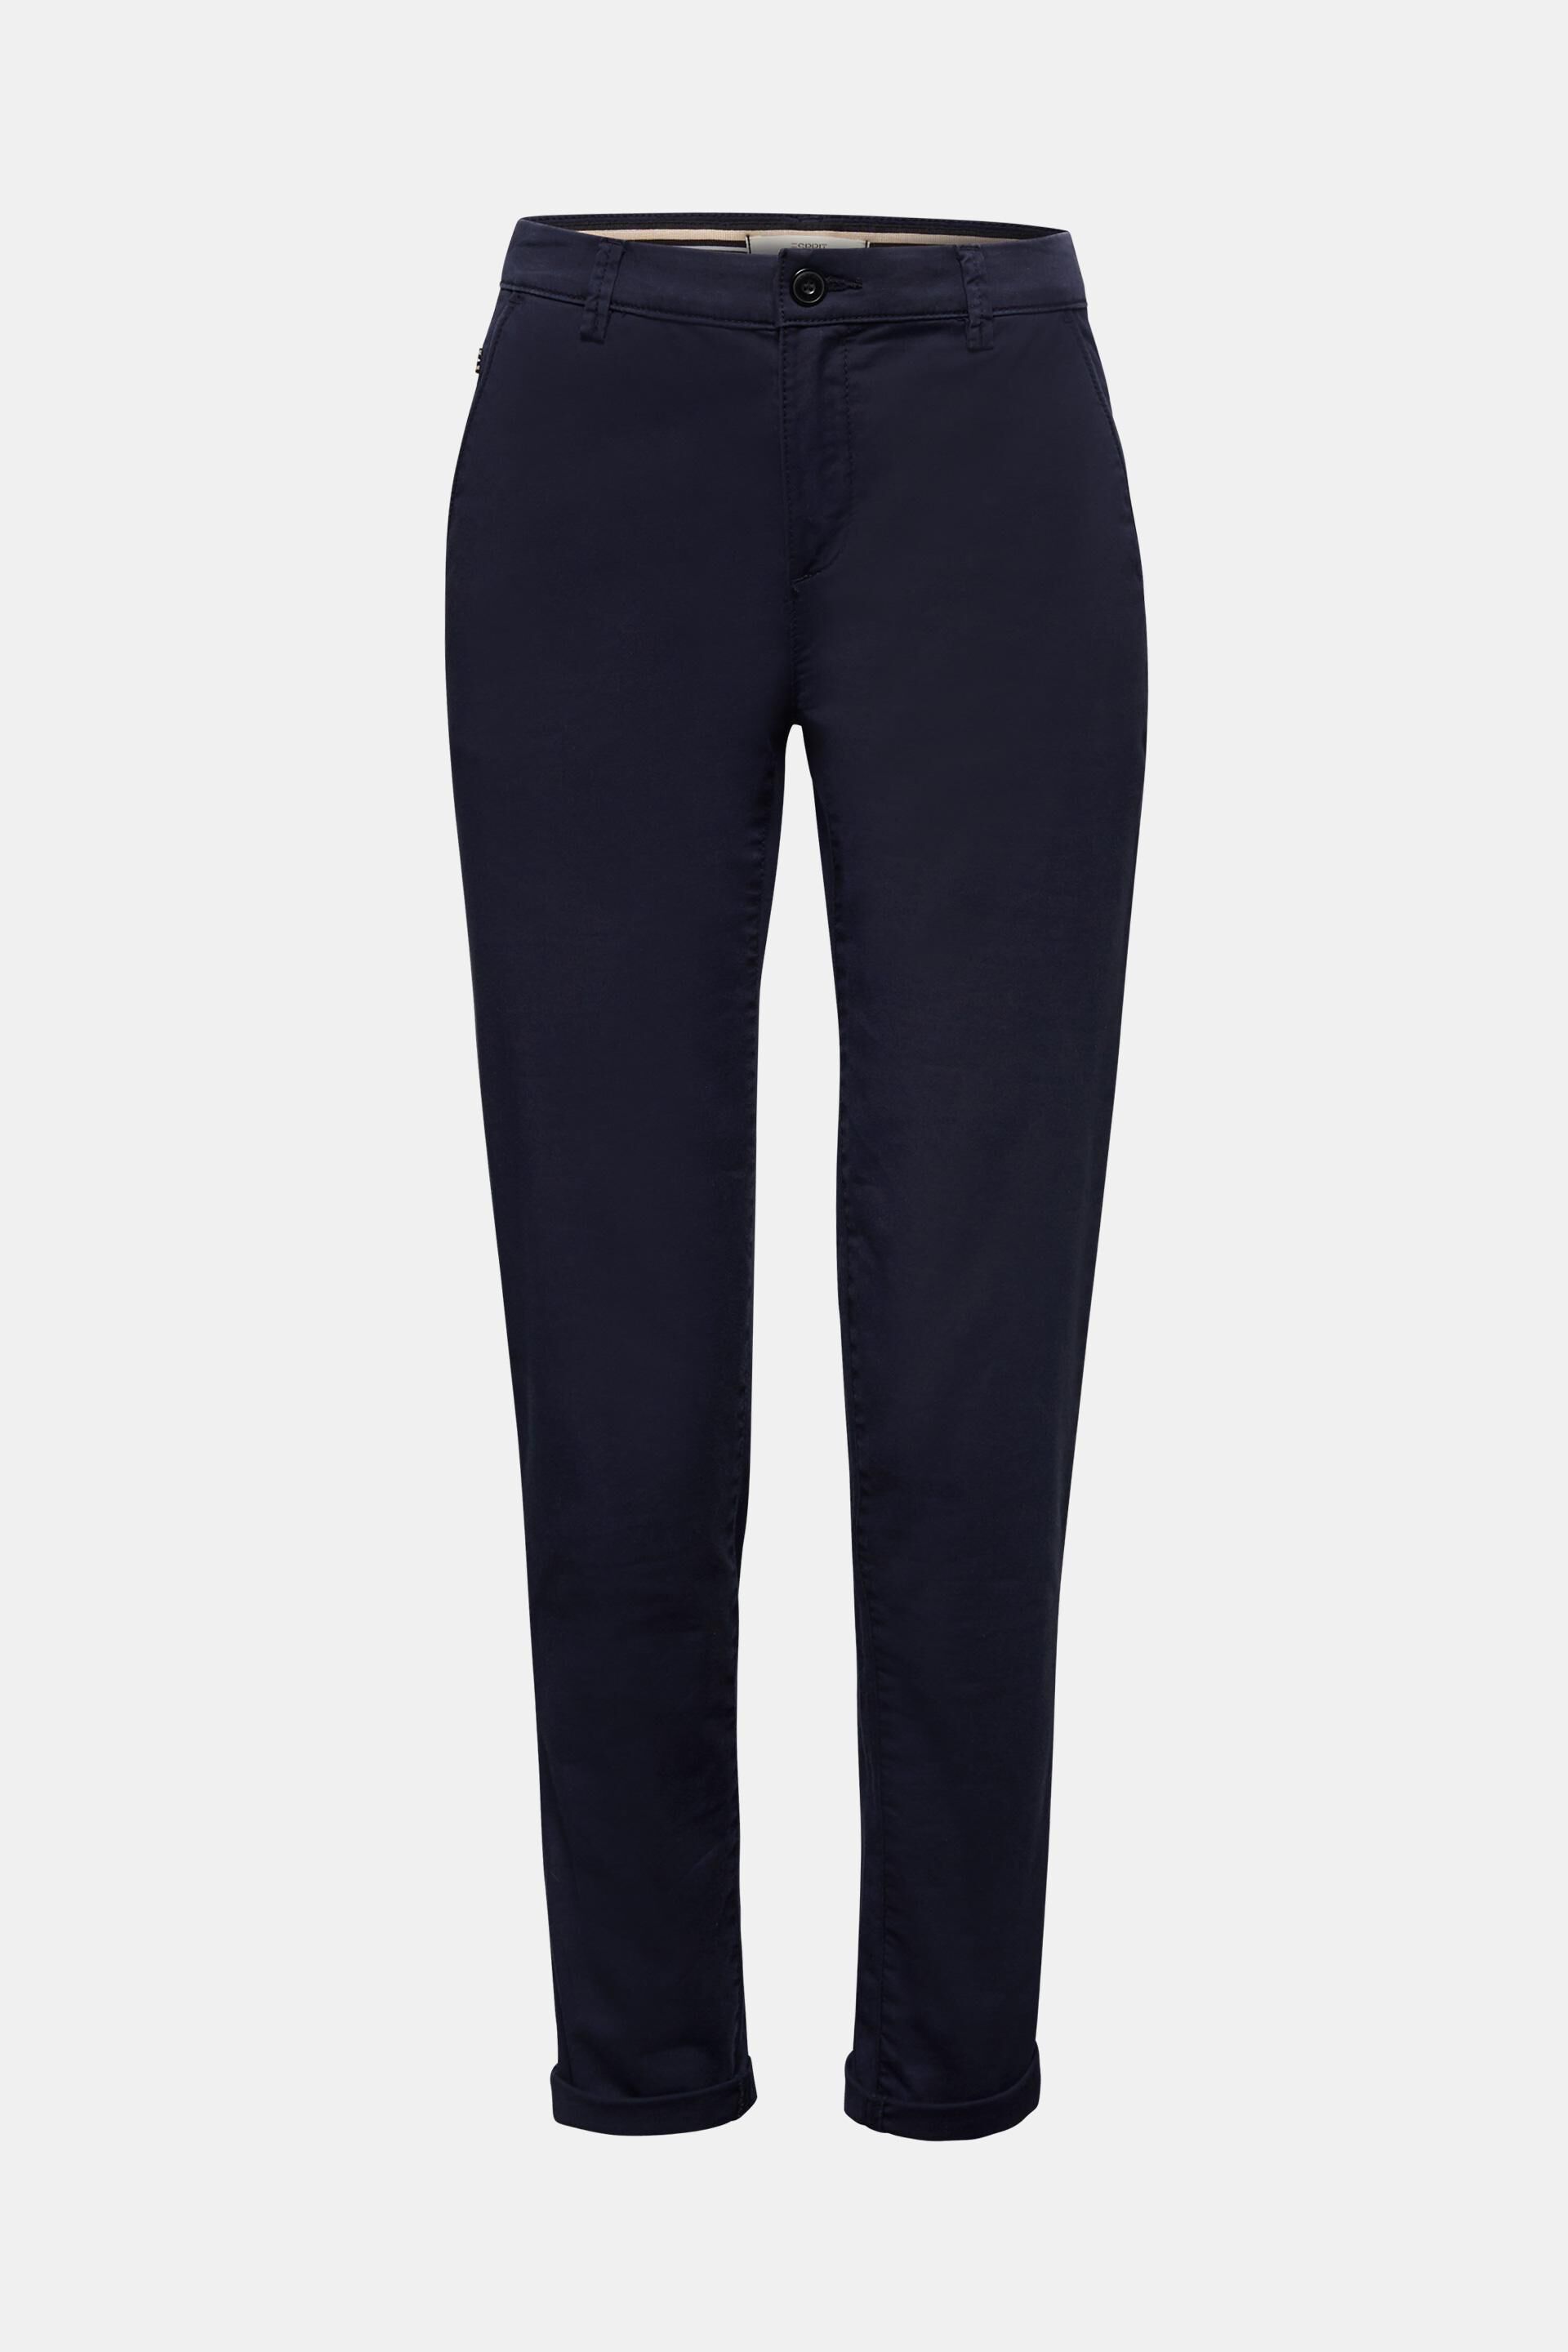 Esprit Spodnie z zak\u0142adkami jasnoszary Melan\u017cowy W stylu biznesowym Moda Spodnie Spodnie z zakładkami 